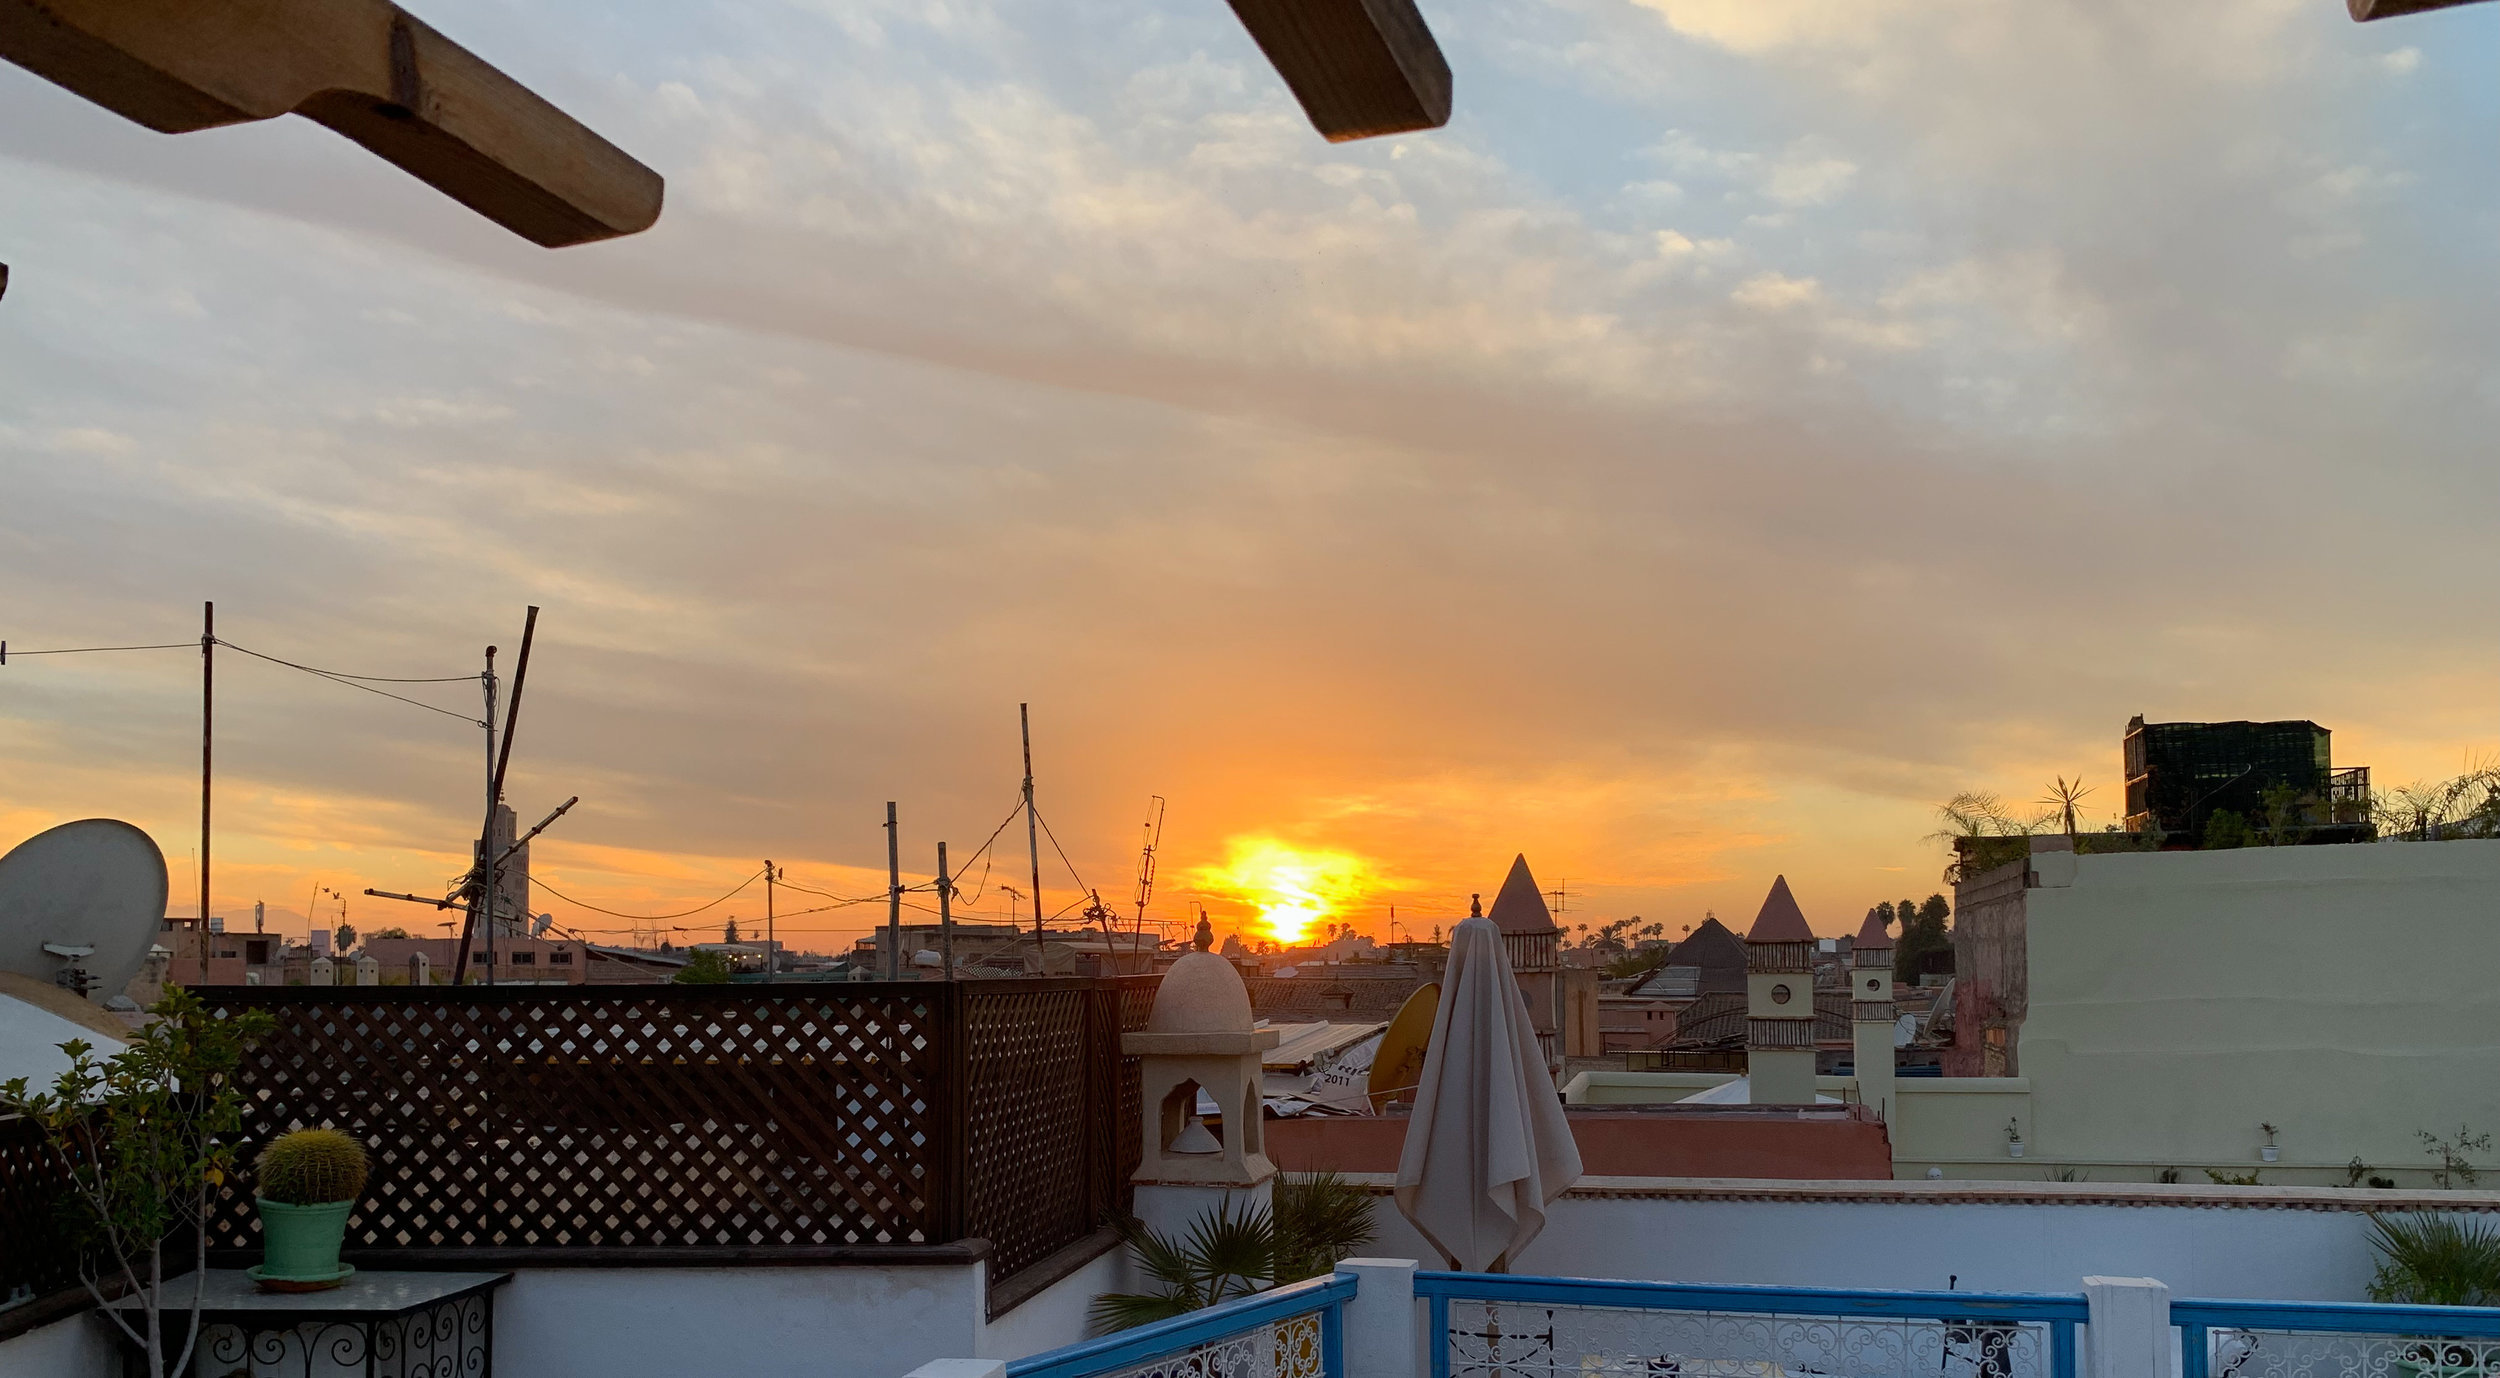 Sunset over Marrakech